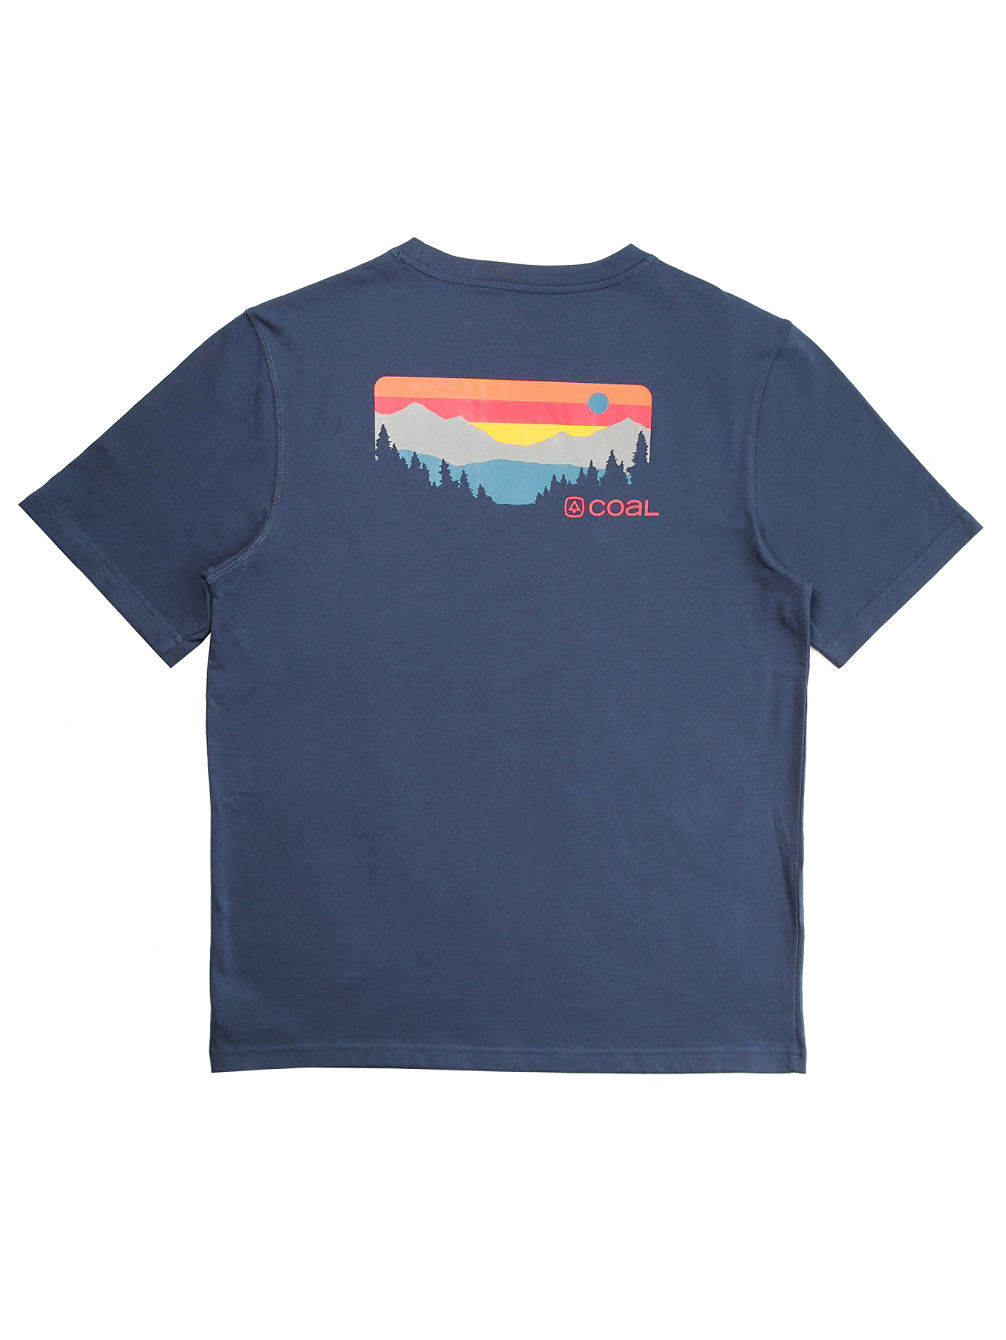 Klamath T-Shirt